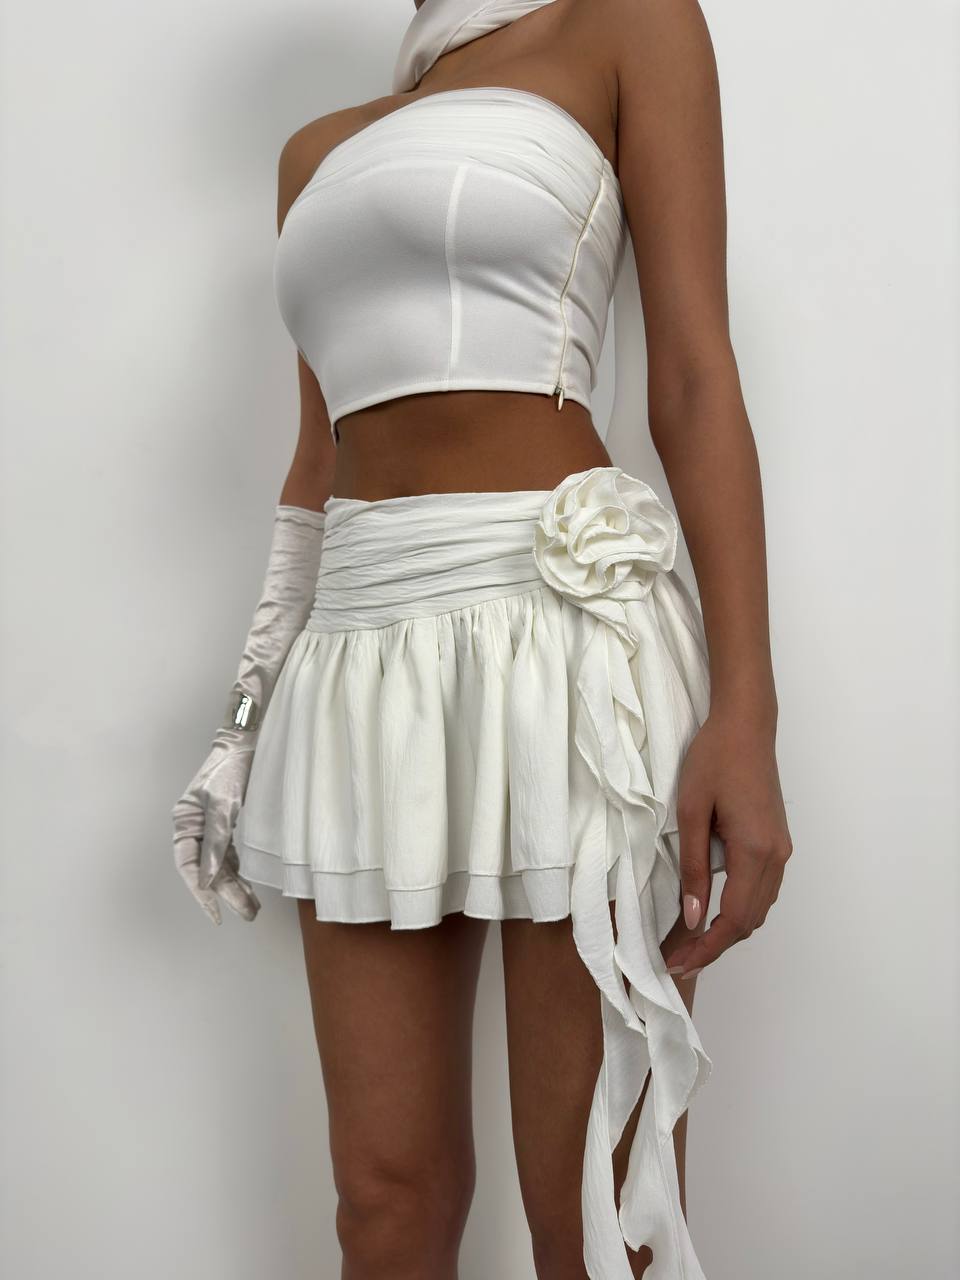 BK1590 - Skirt